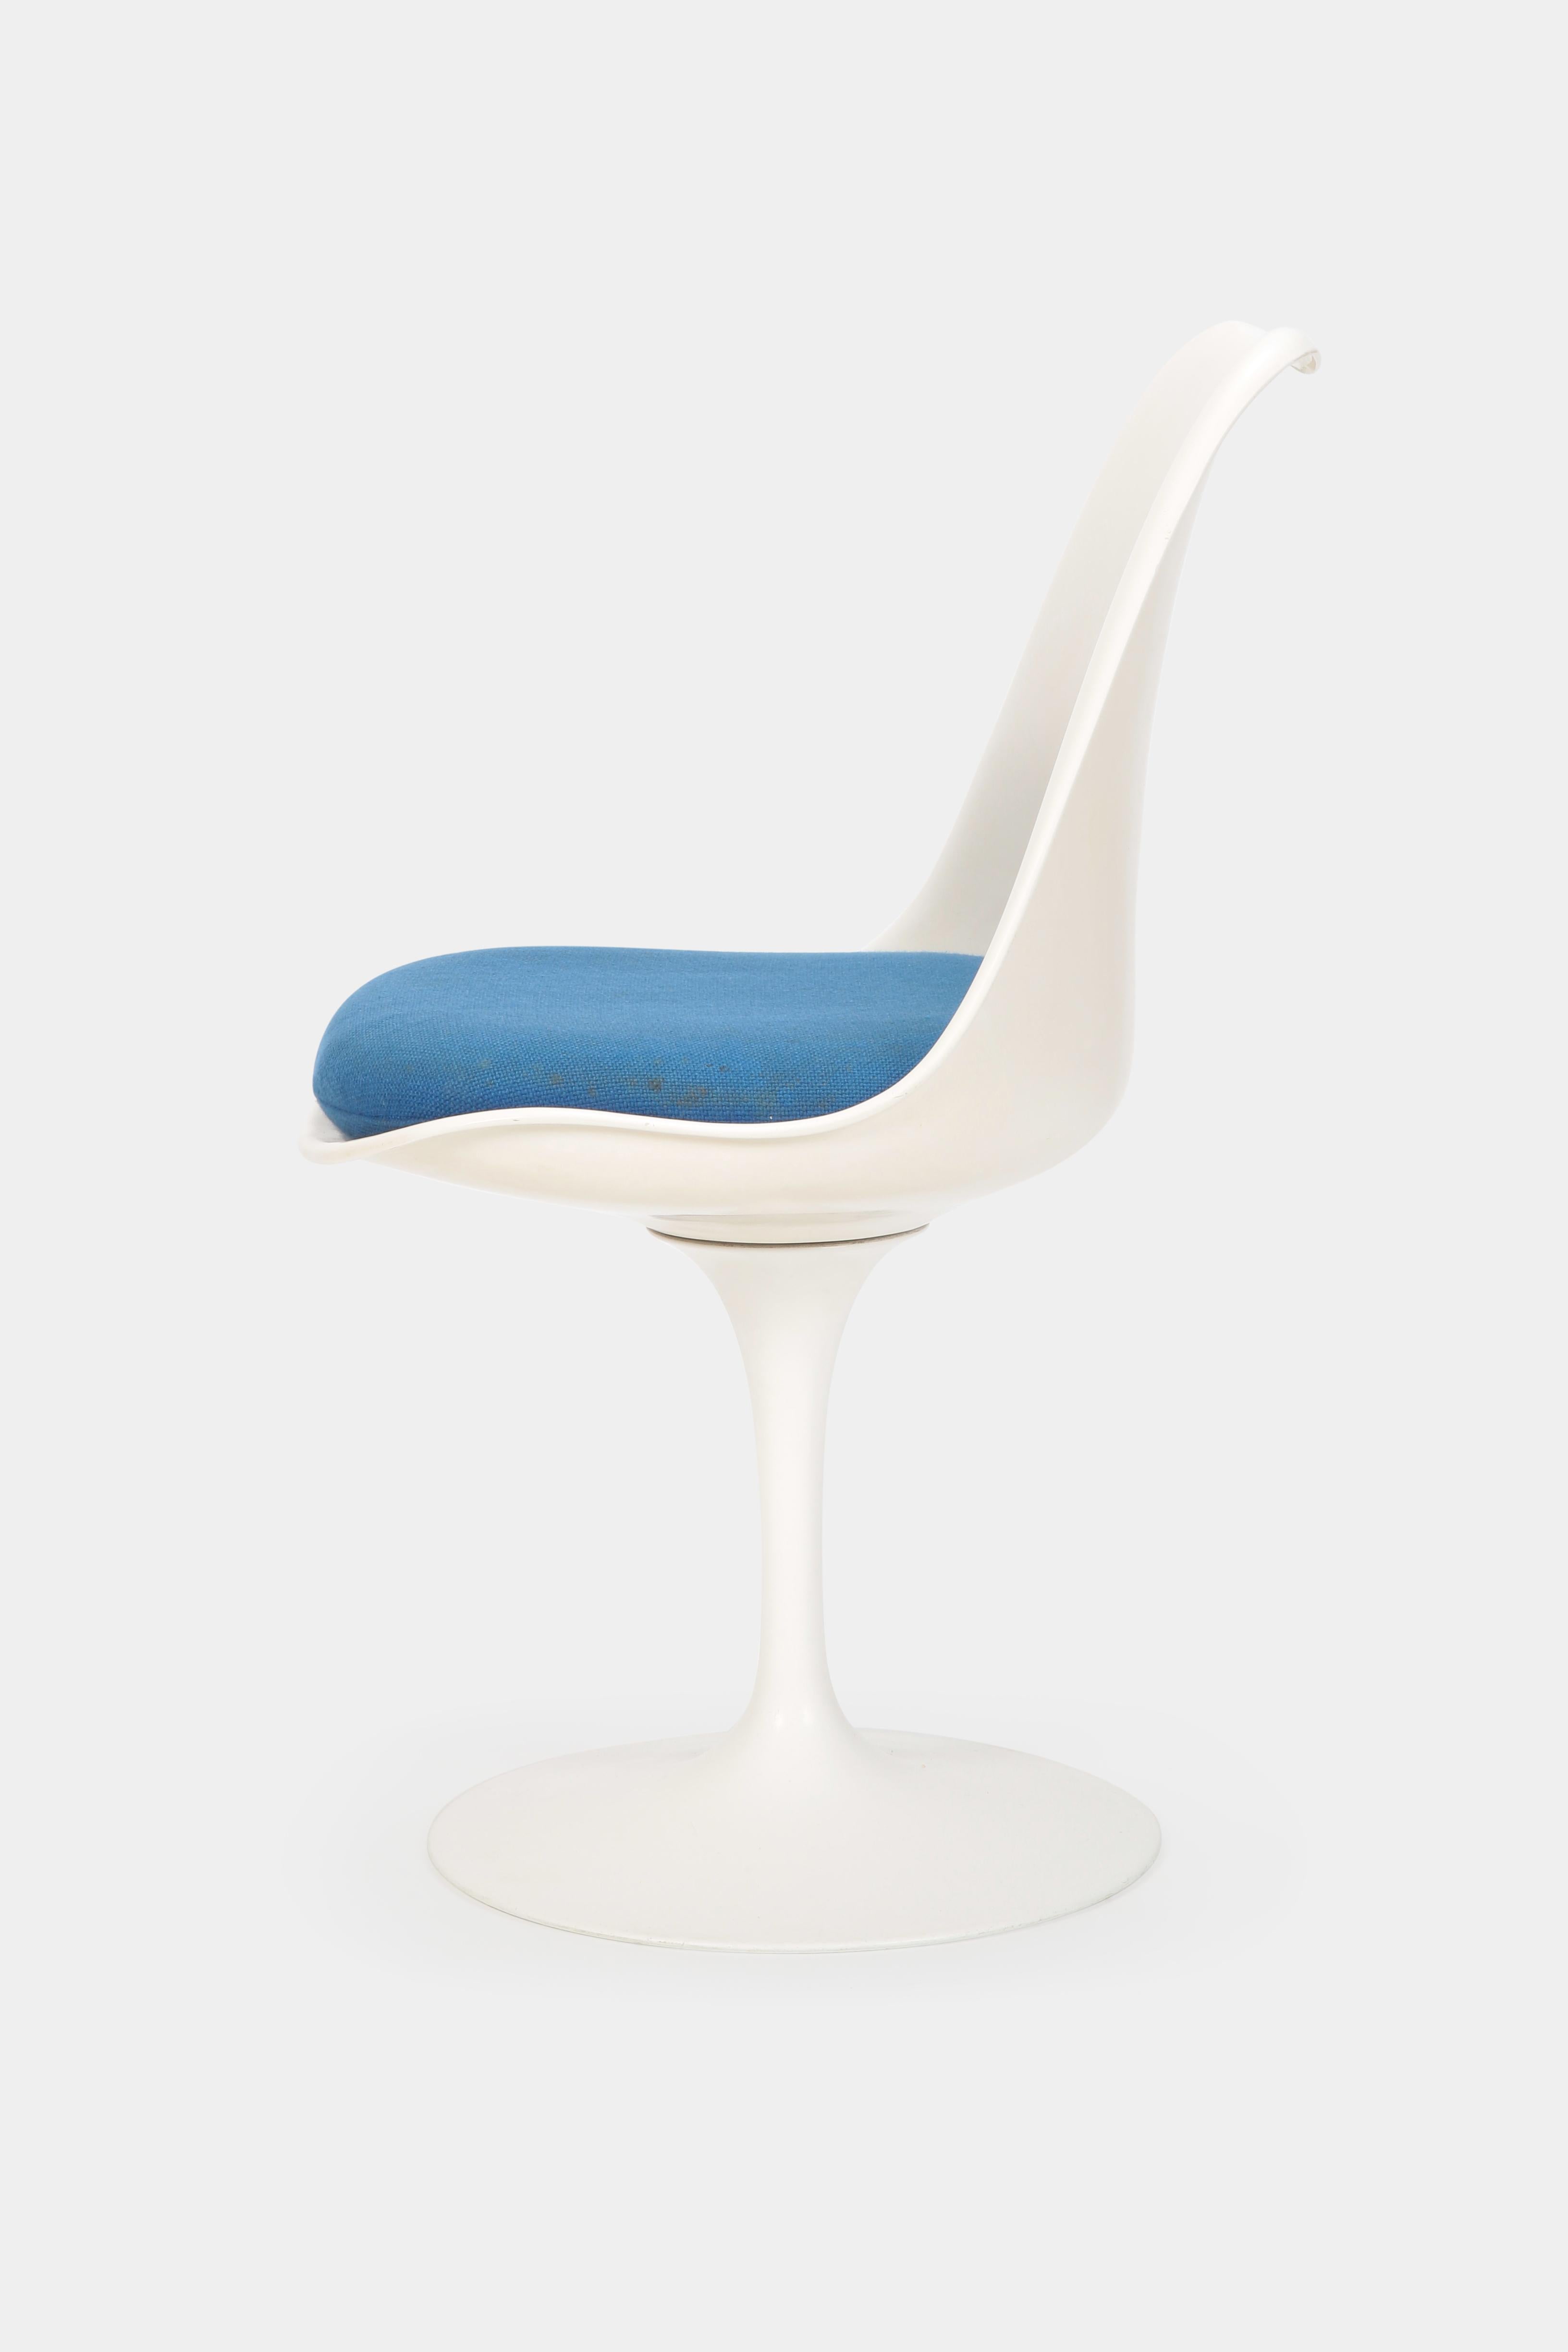 Mid-Century Modern Eero Saarinen “Tulip” Chair Knoll International, 1960s